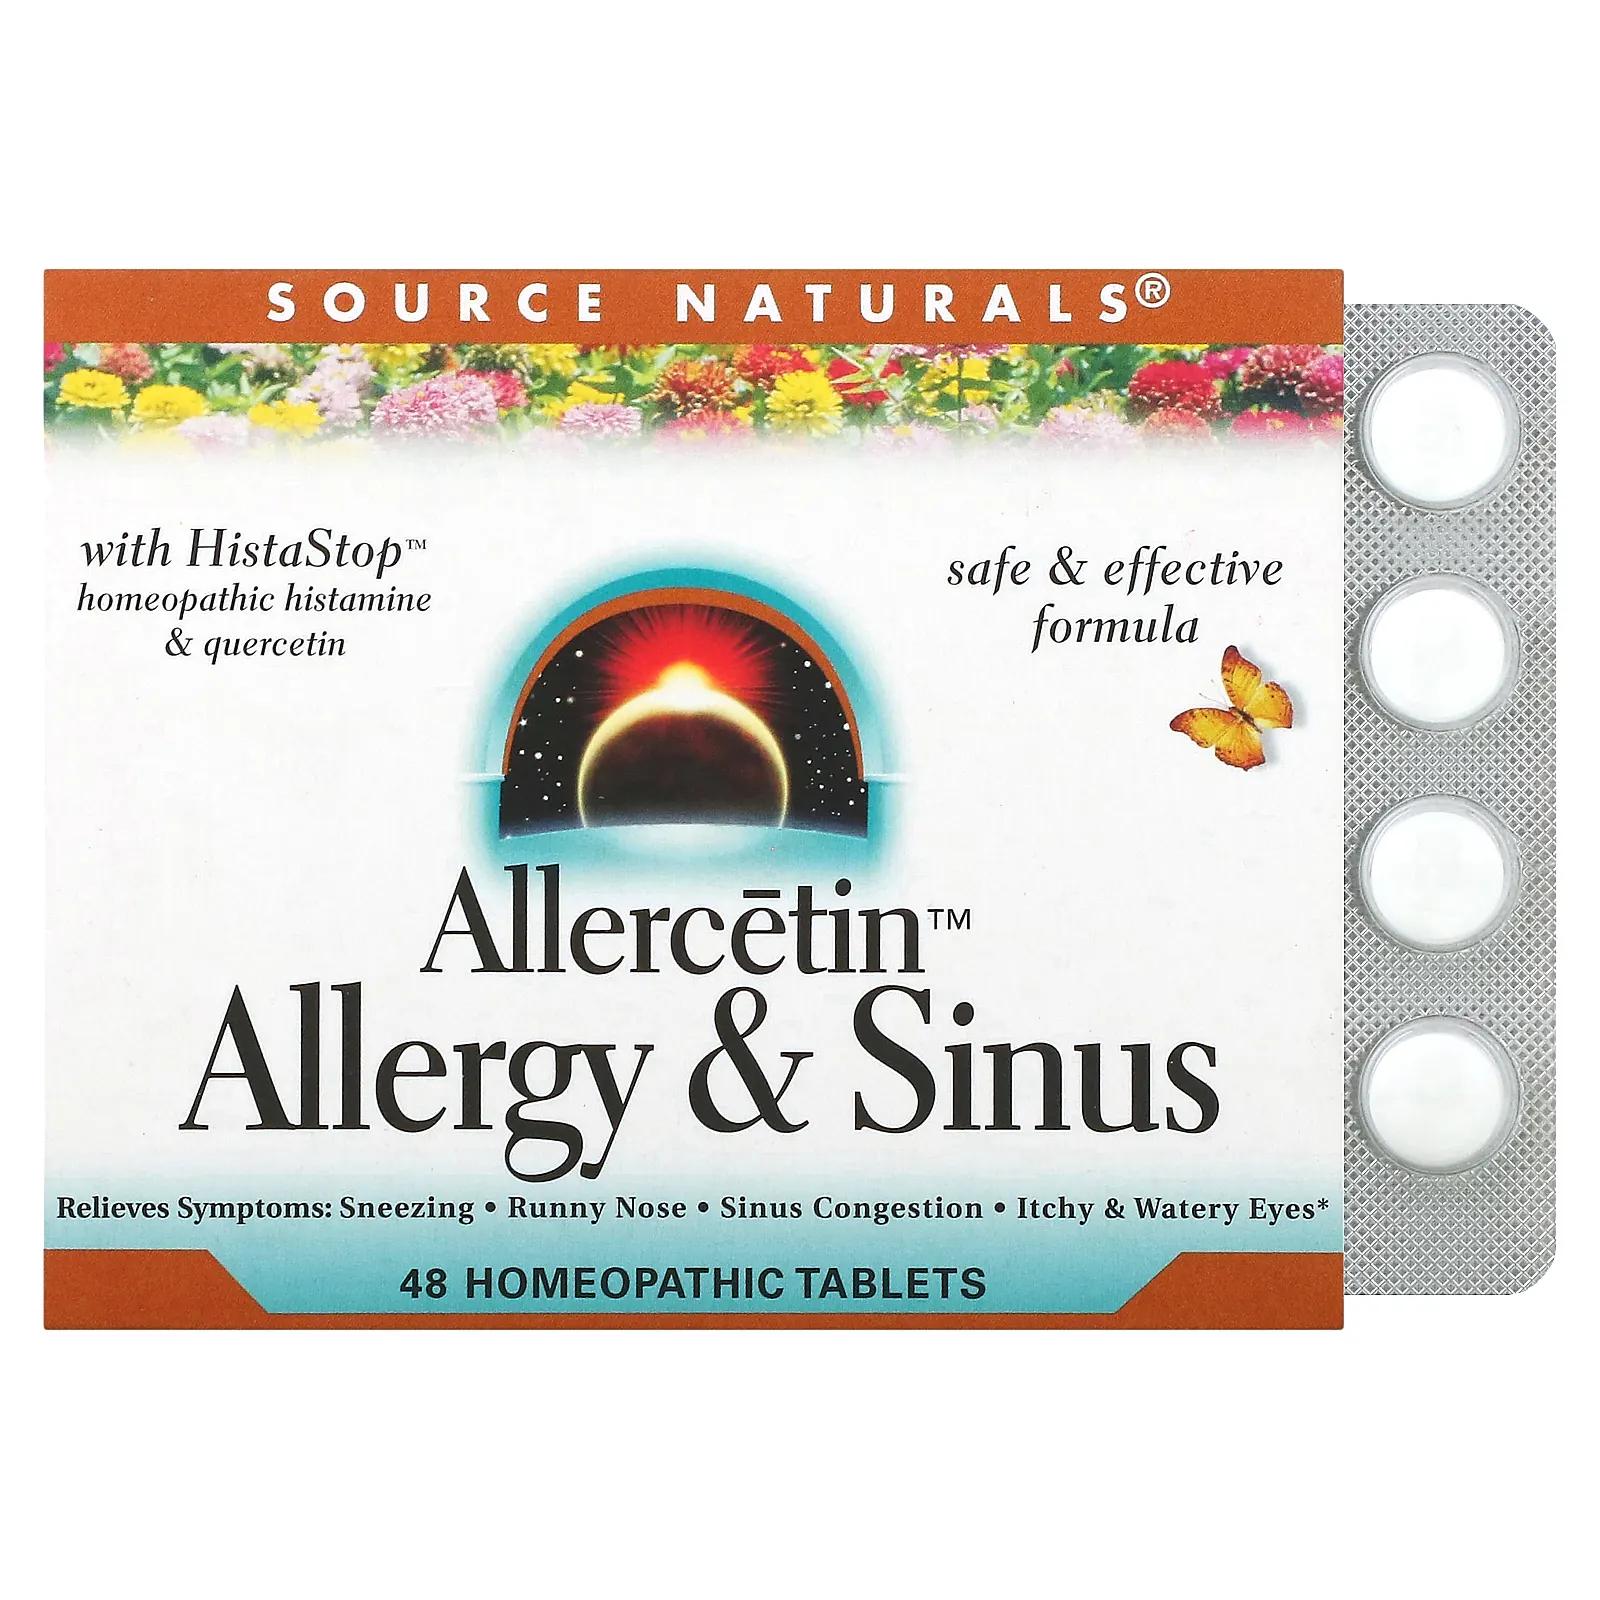 Source Naturals Allercetin Средство от аллергии и заложенности носа 48 гомеопатических таблеток